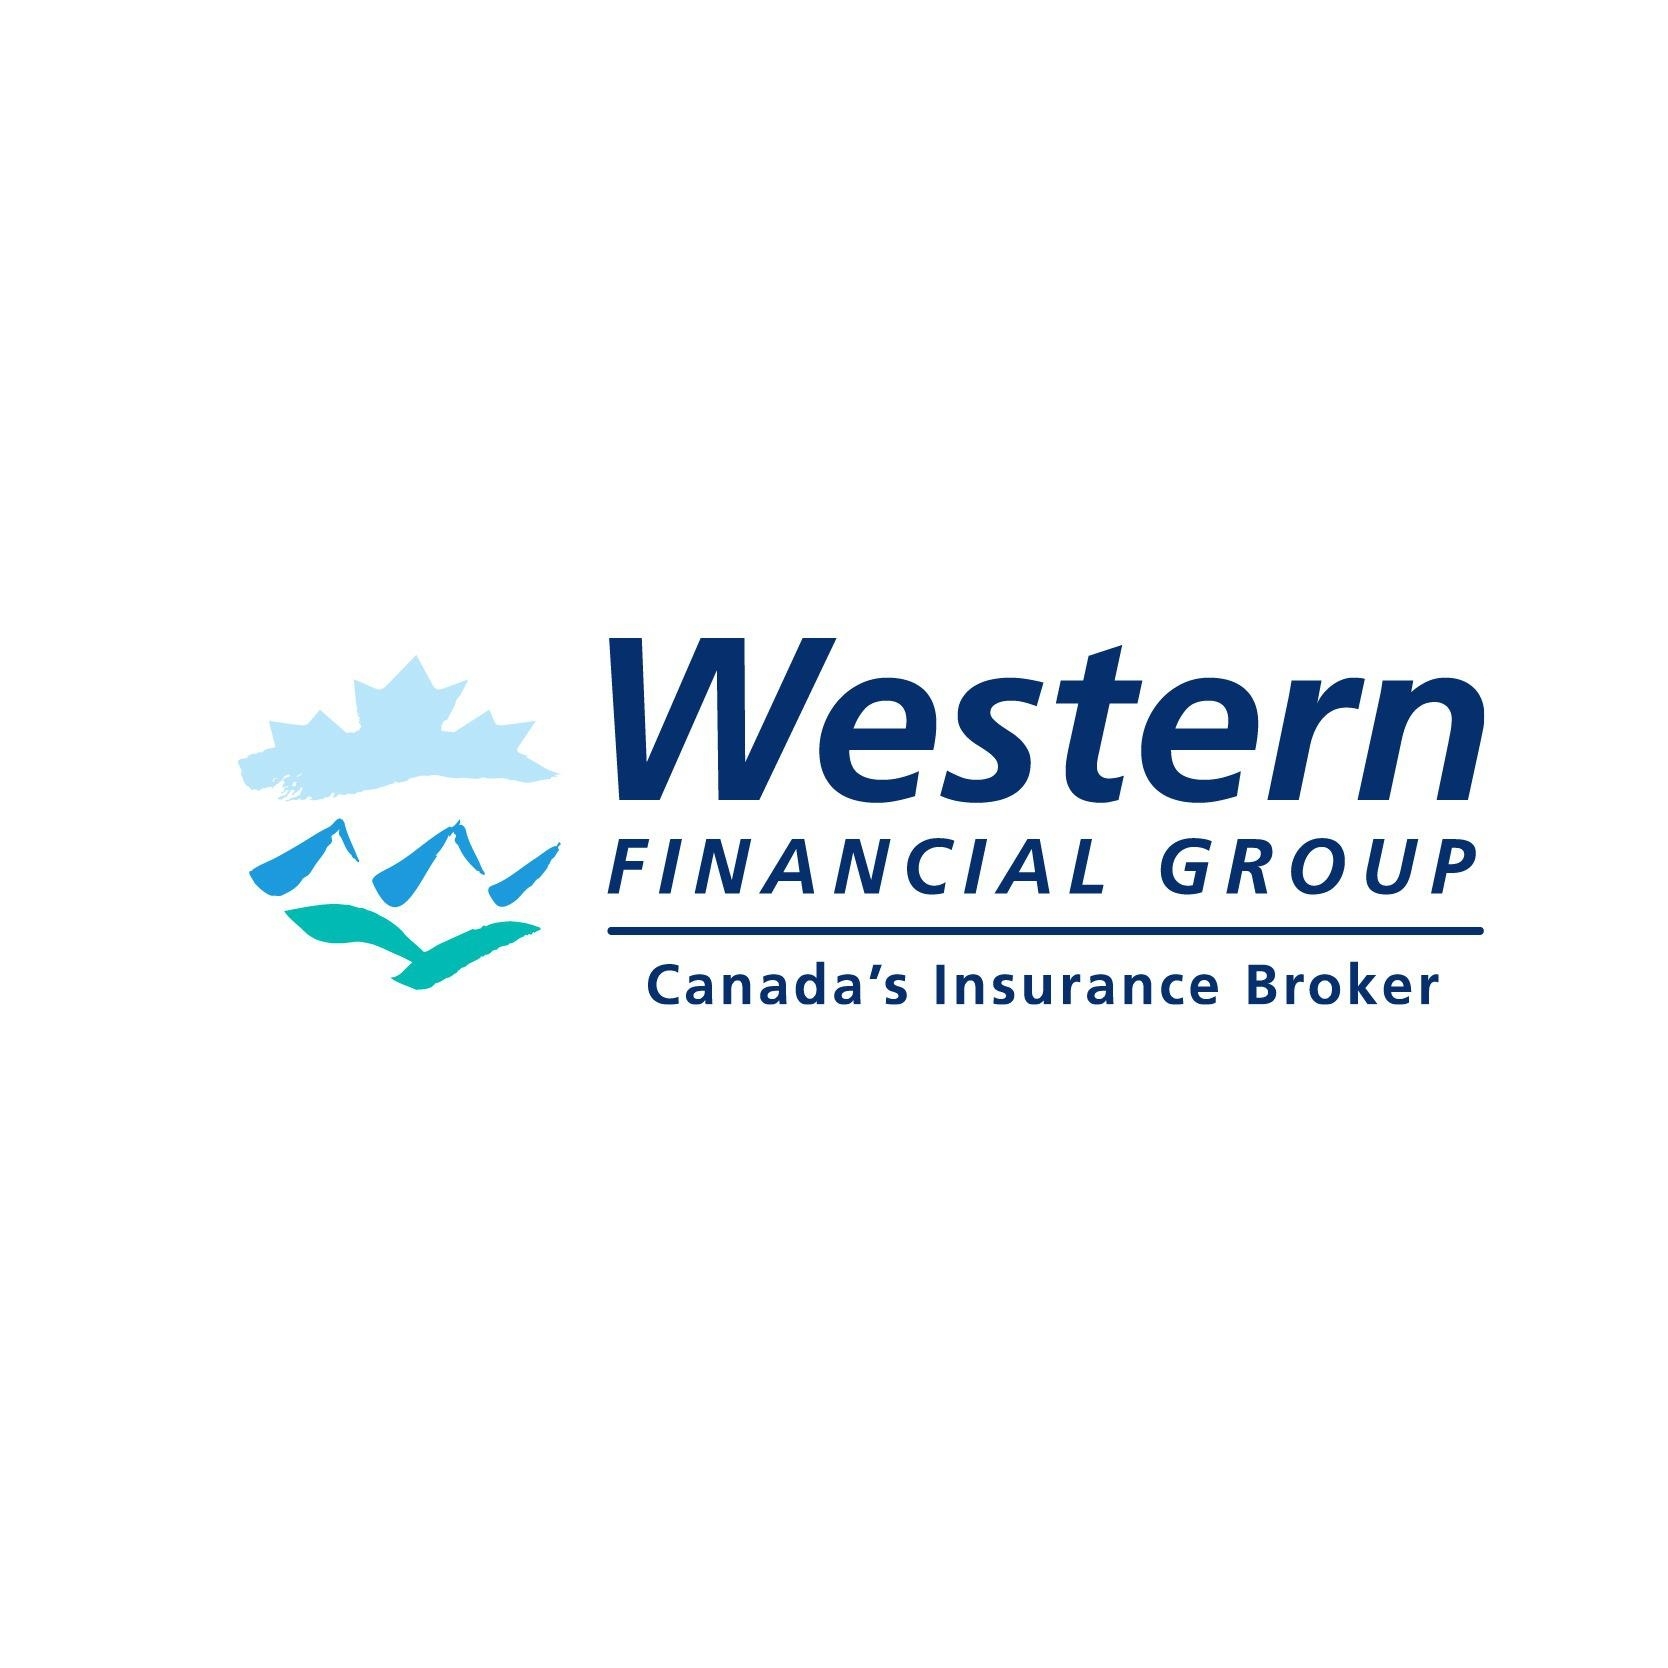 Western Financial Group - Assurance